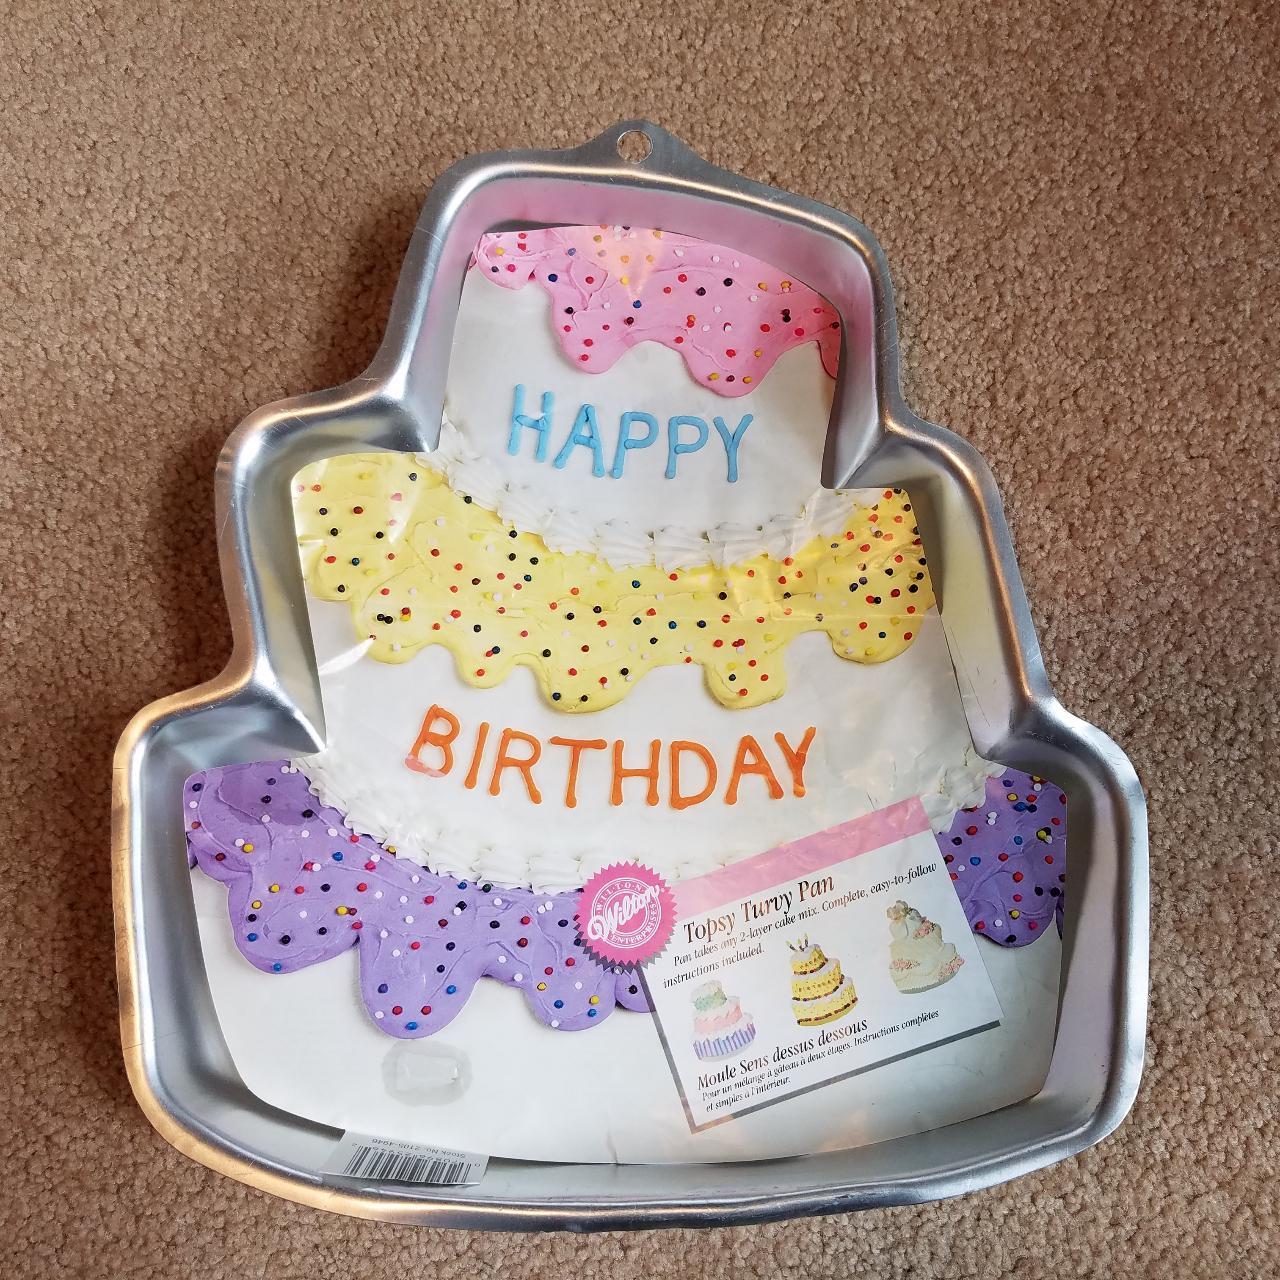 Cake pan storage - wilton cake pan - decorative cake pan - storage